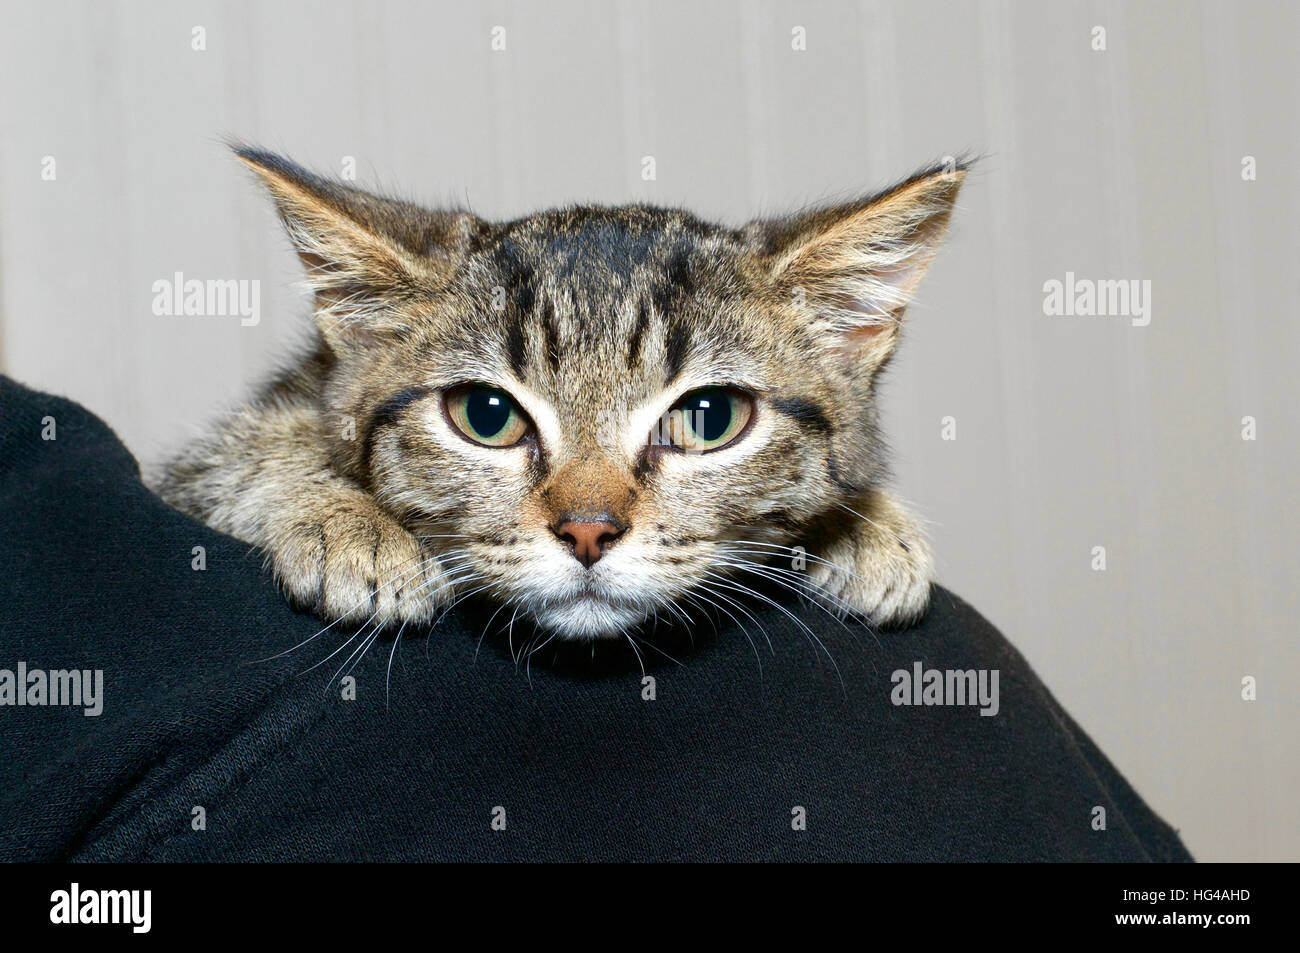 Grigio e Nero striped tabby kitten aggrappati alla spalla della persona, nervoso e la sensazione di paura in qualche modo fissare tenuto da una persona. Foto Stock